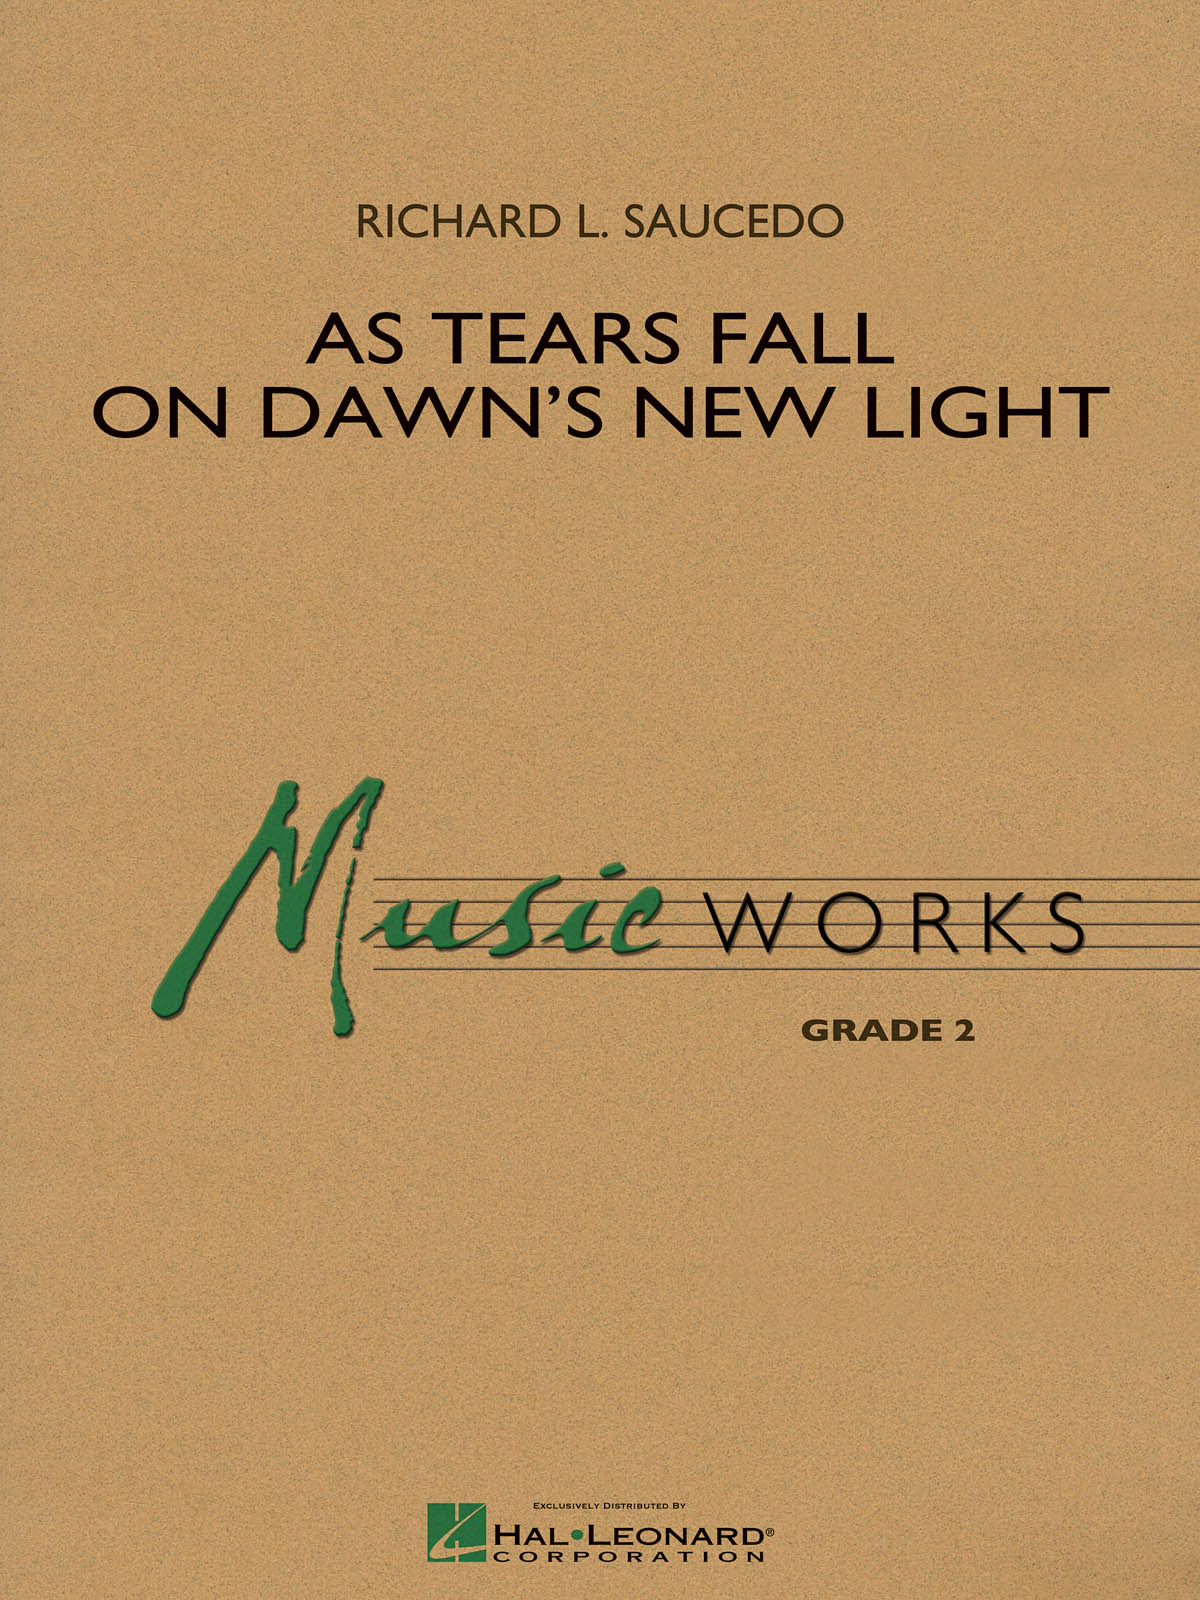 As Tears Fall On Dawn’s New Light